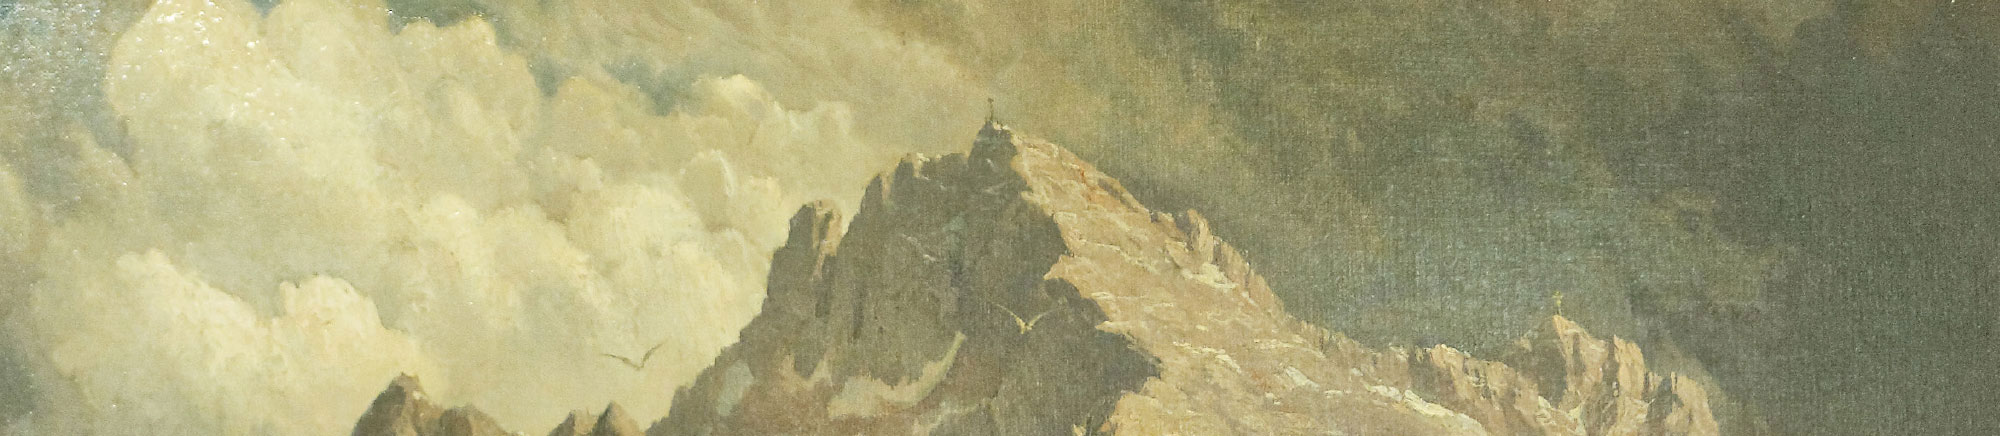 200 Jahre Zugspitze - präsentiert von Bergwelten